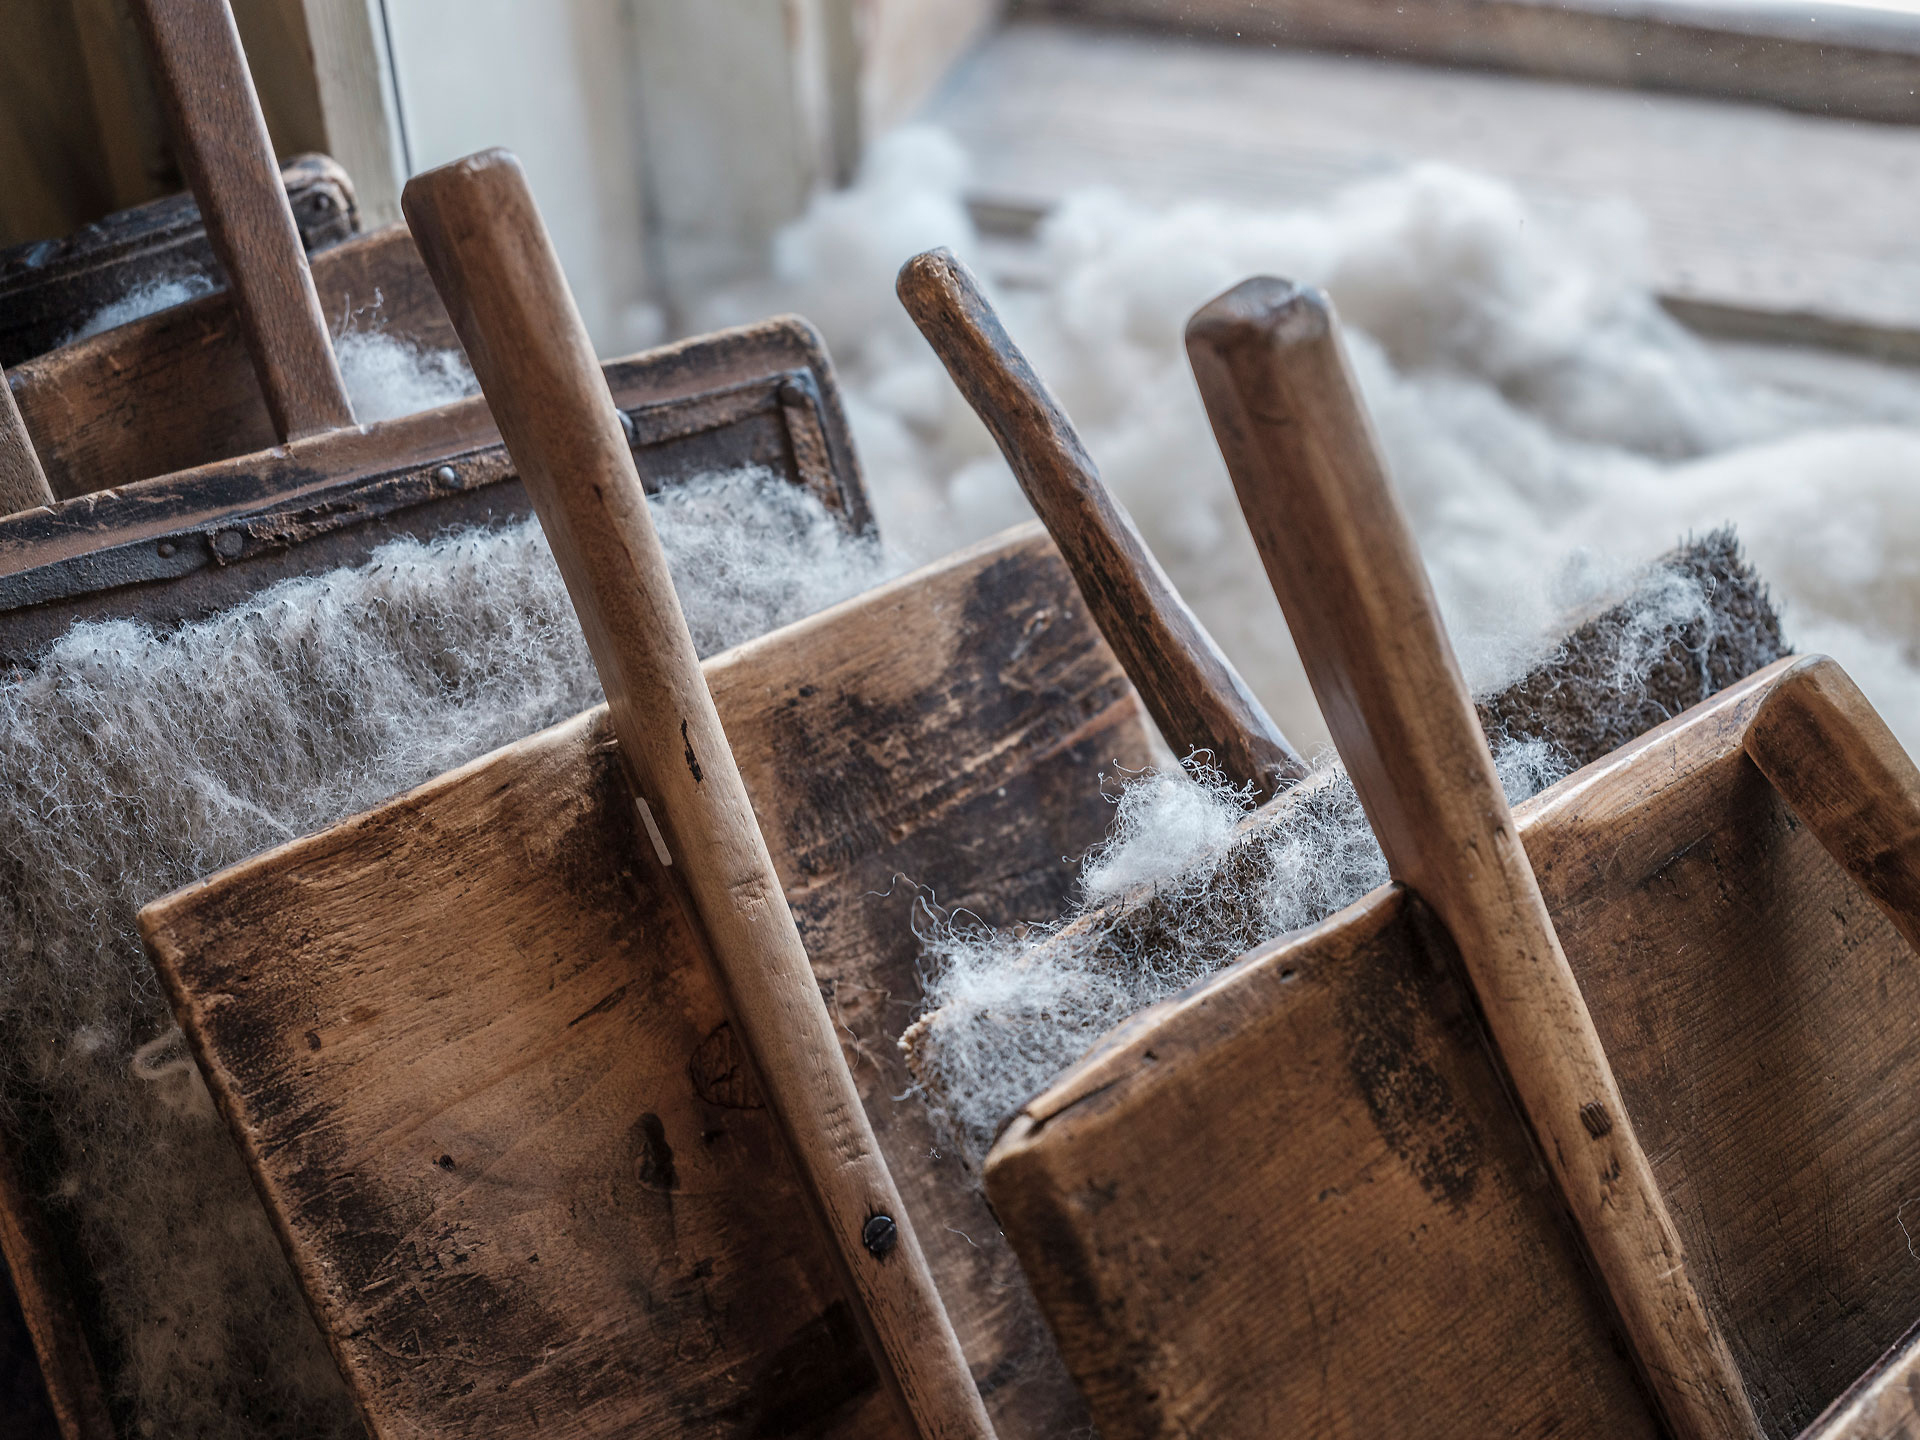 Dettaglio degli scardassi, delle spazzole utilizzate per cardare a mano la lana.